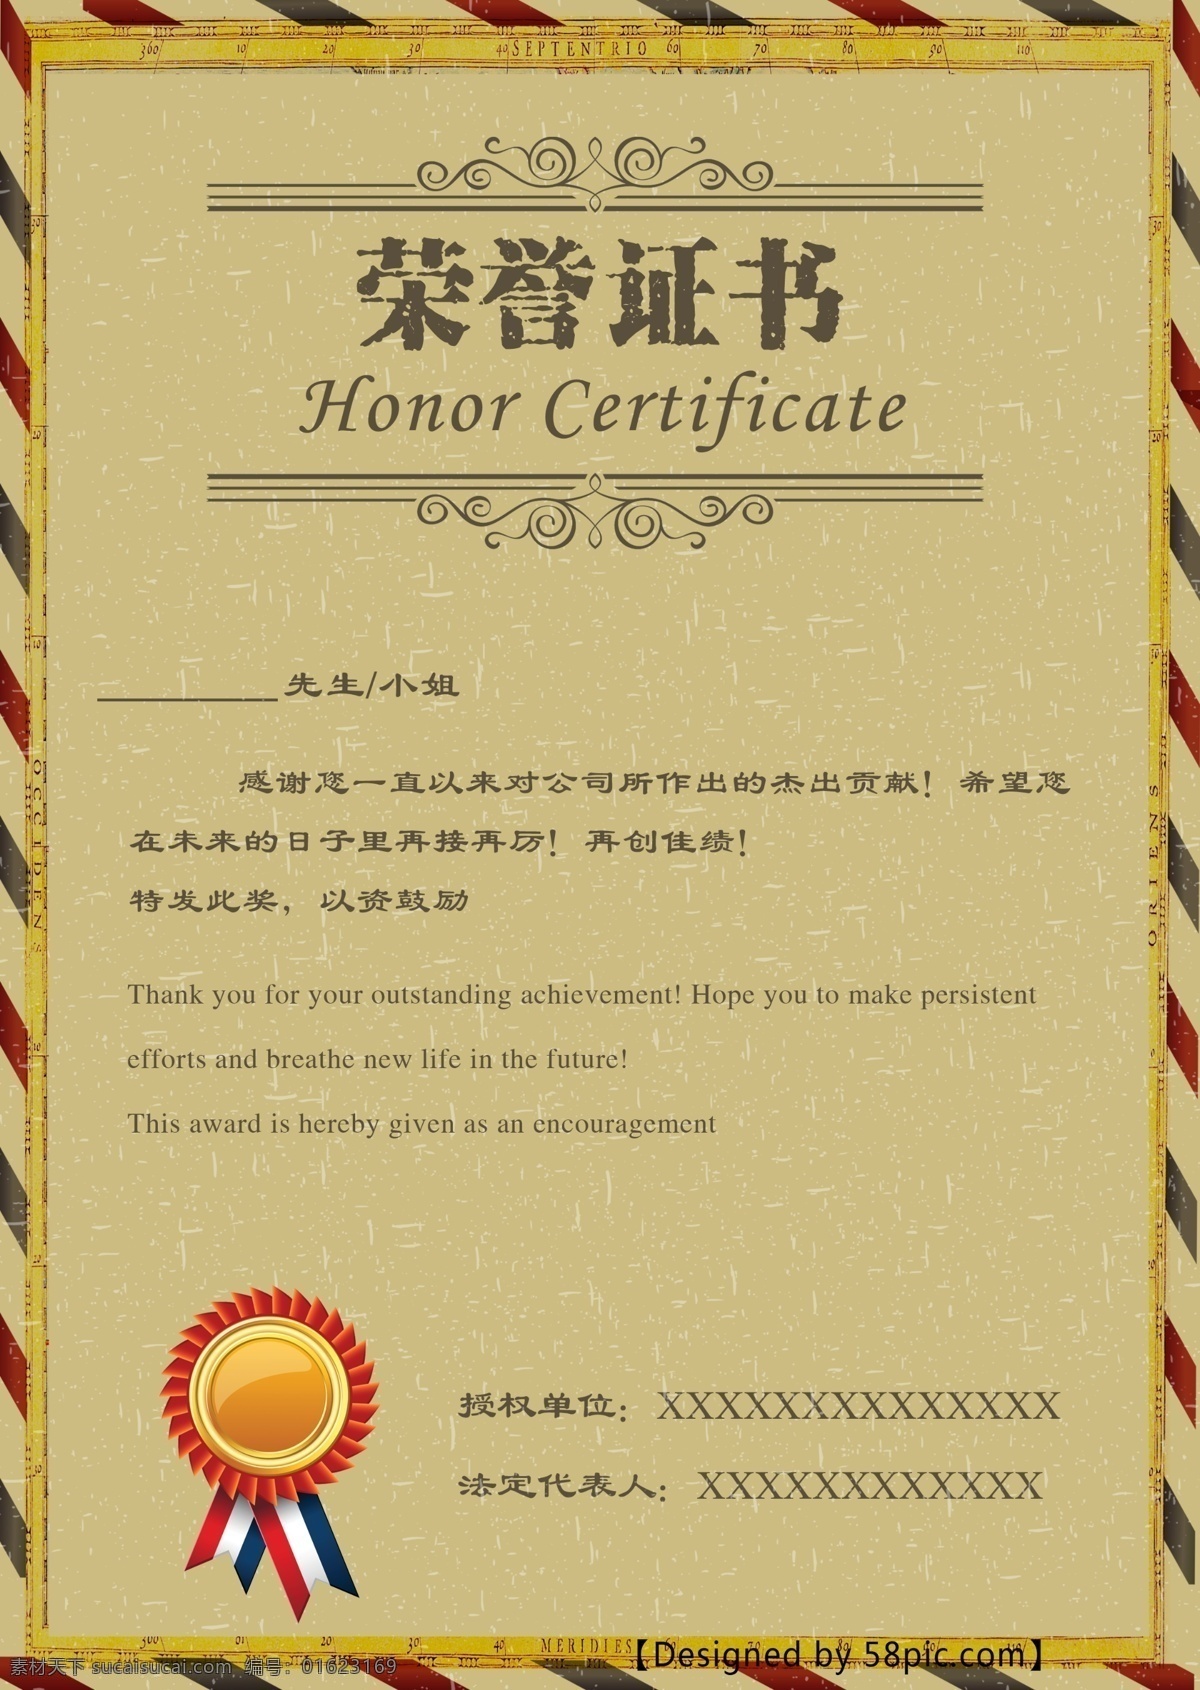 荣誉证书 模版 证书 企业证书 复古背景 奖励 模版下载 复古证书 简约模版